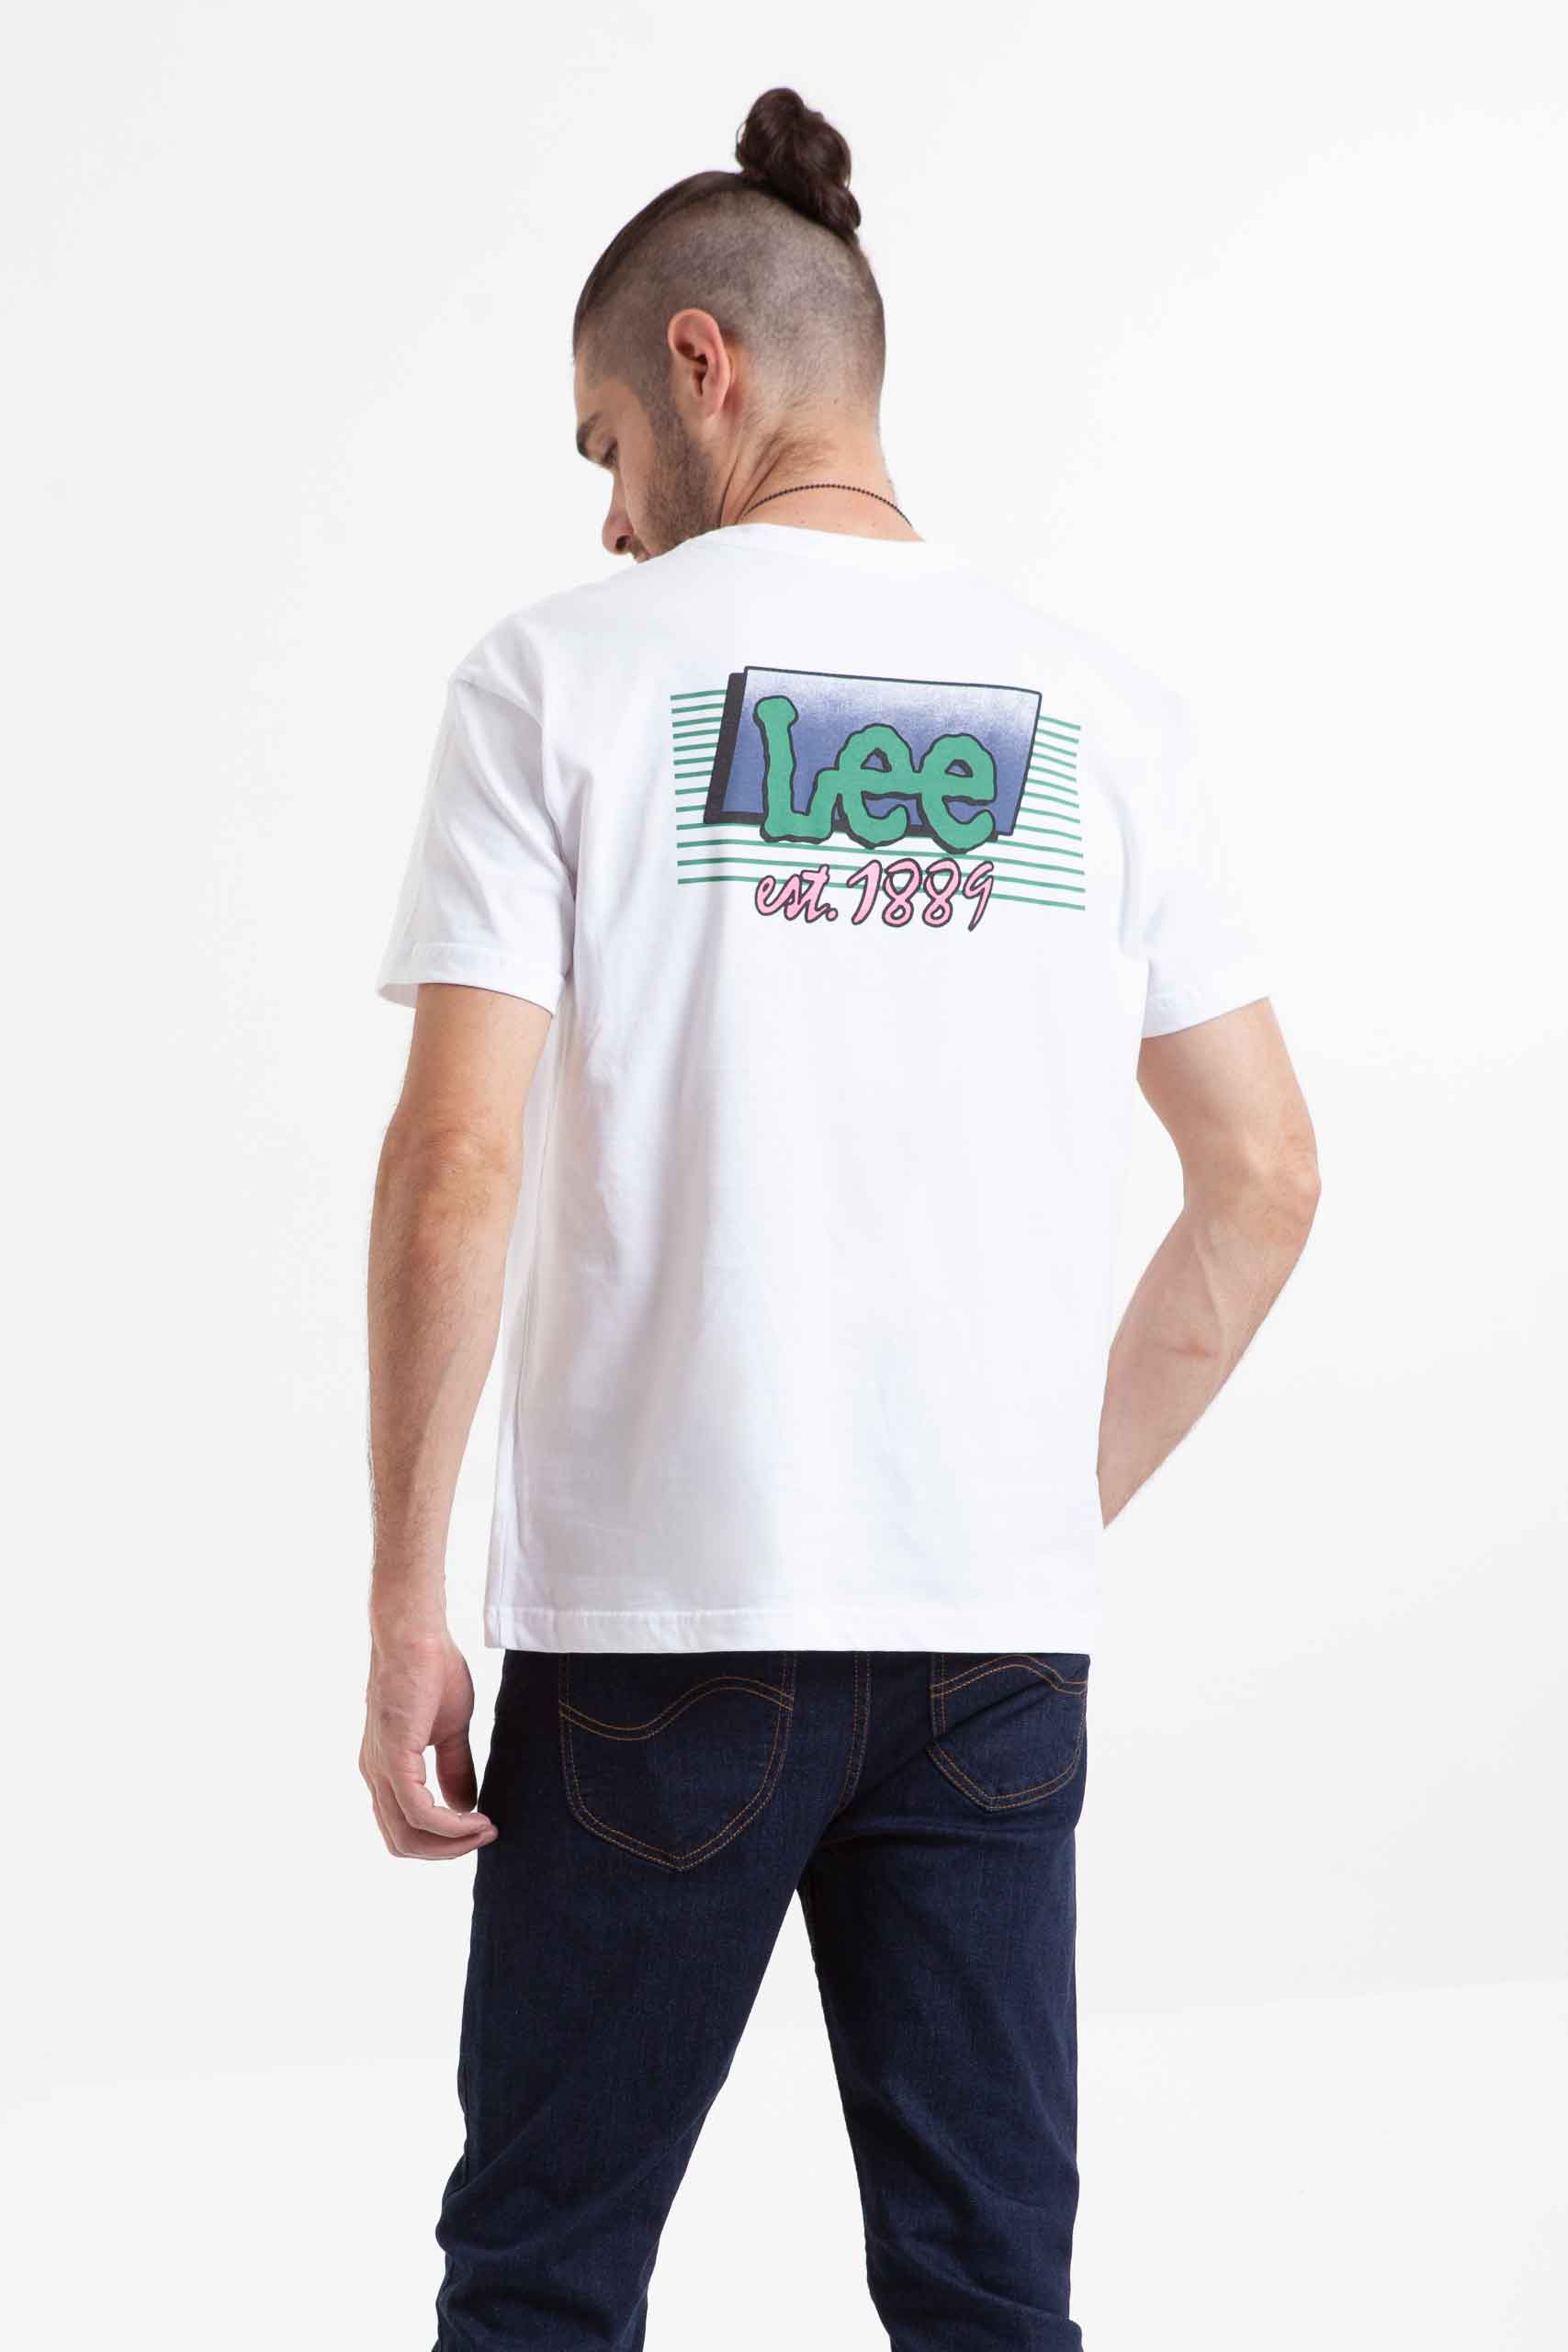 Vista posterior de camiseta de color blanco con estampado marca lee